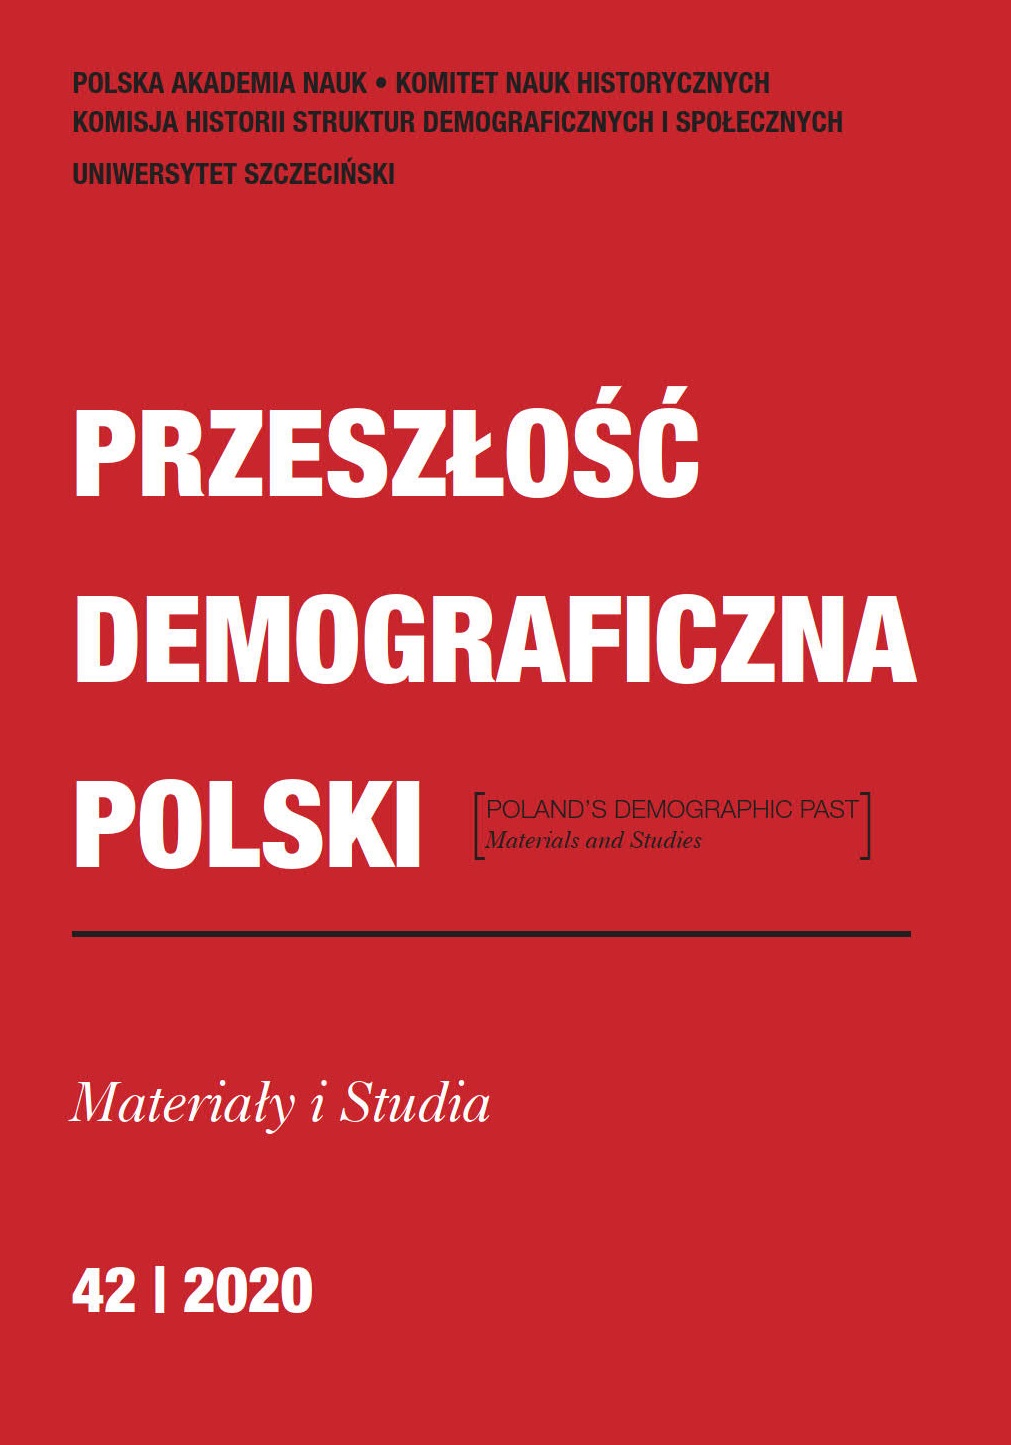 Interaktywny Atlas statystyczno-demograficzny Królestwa Polskiego – projekt badawczy